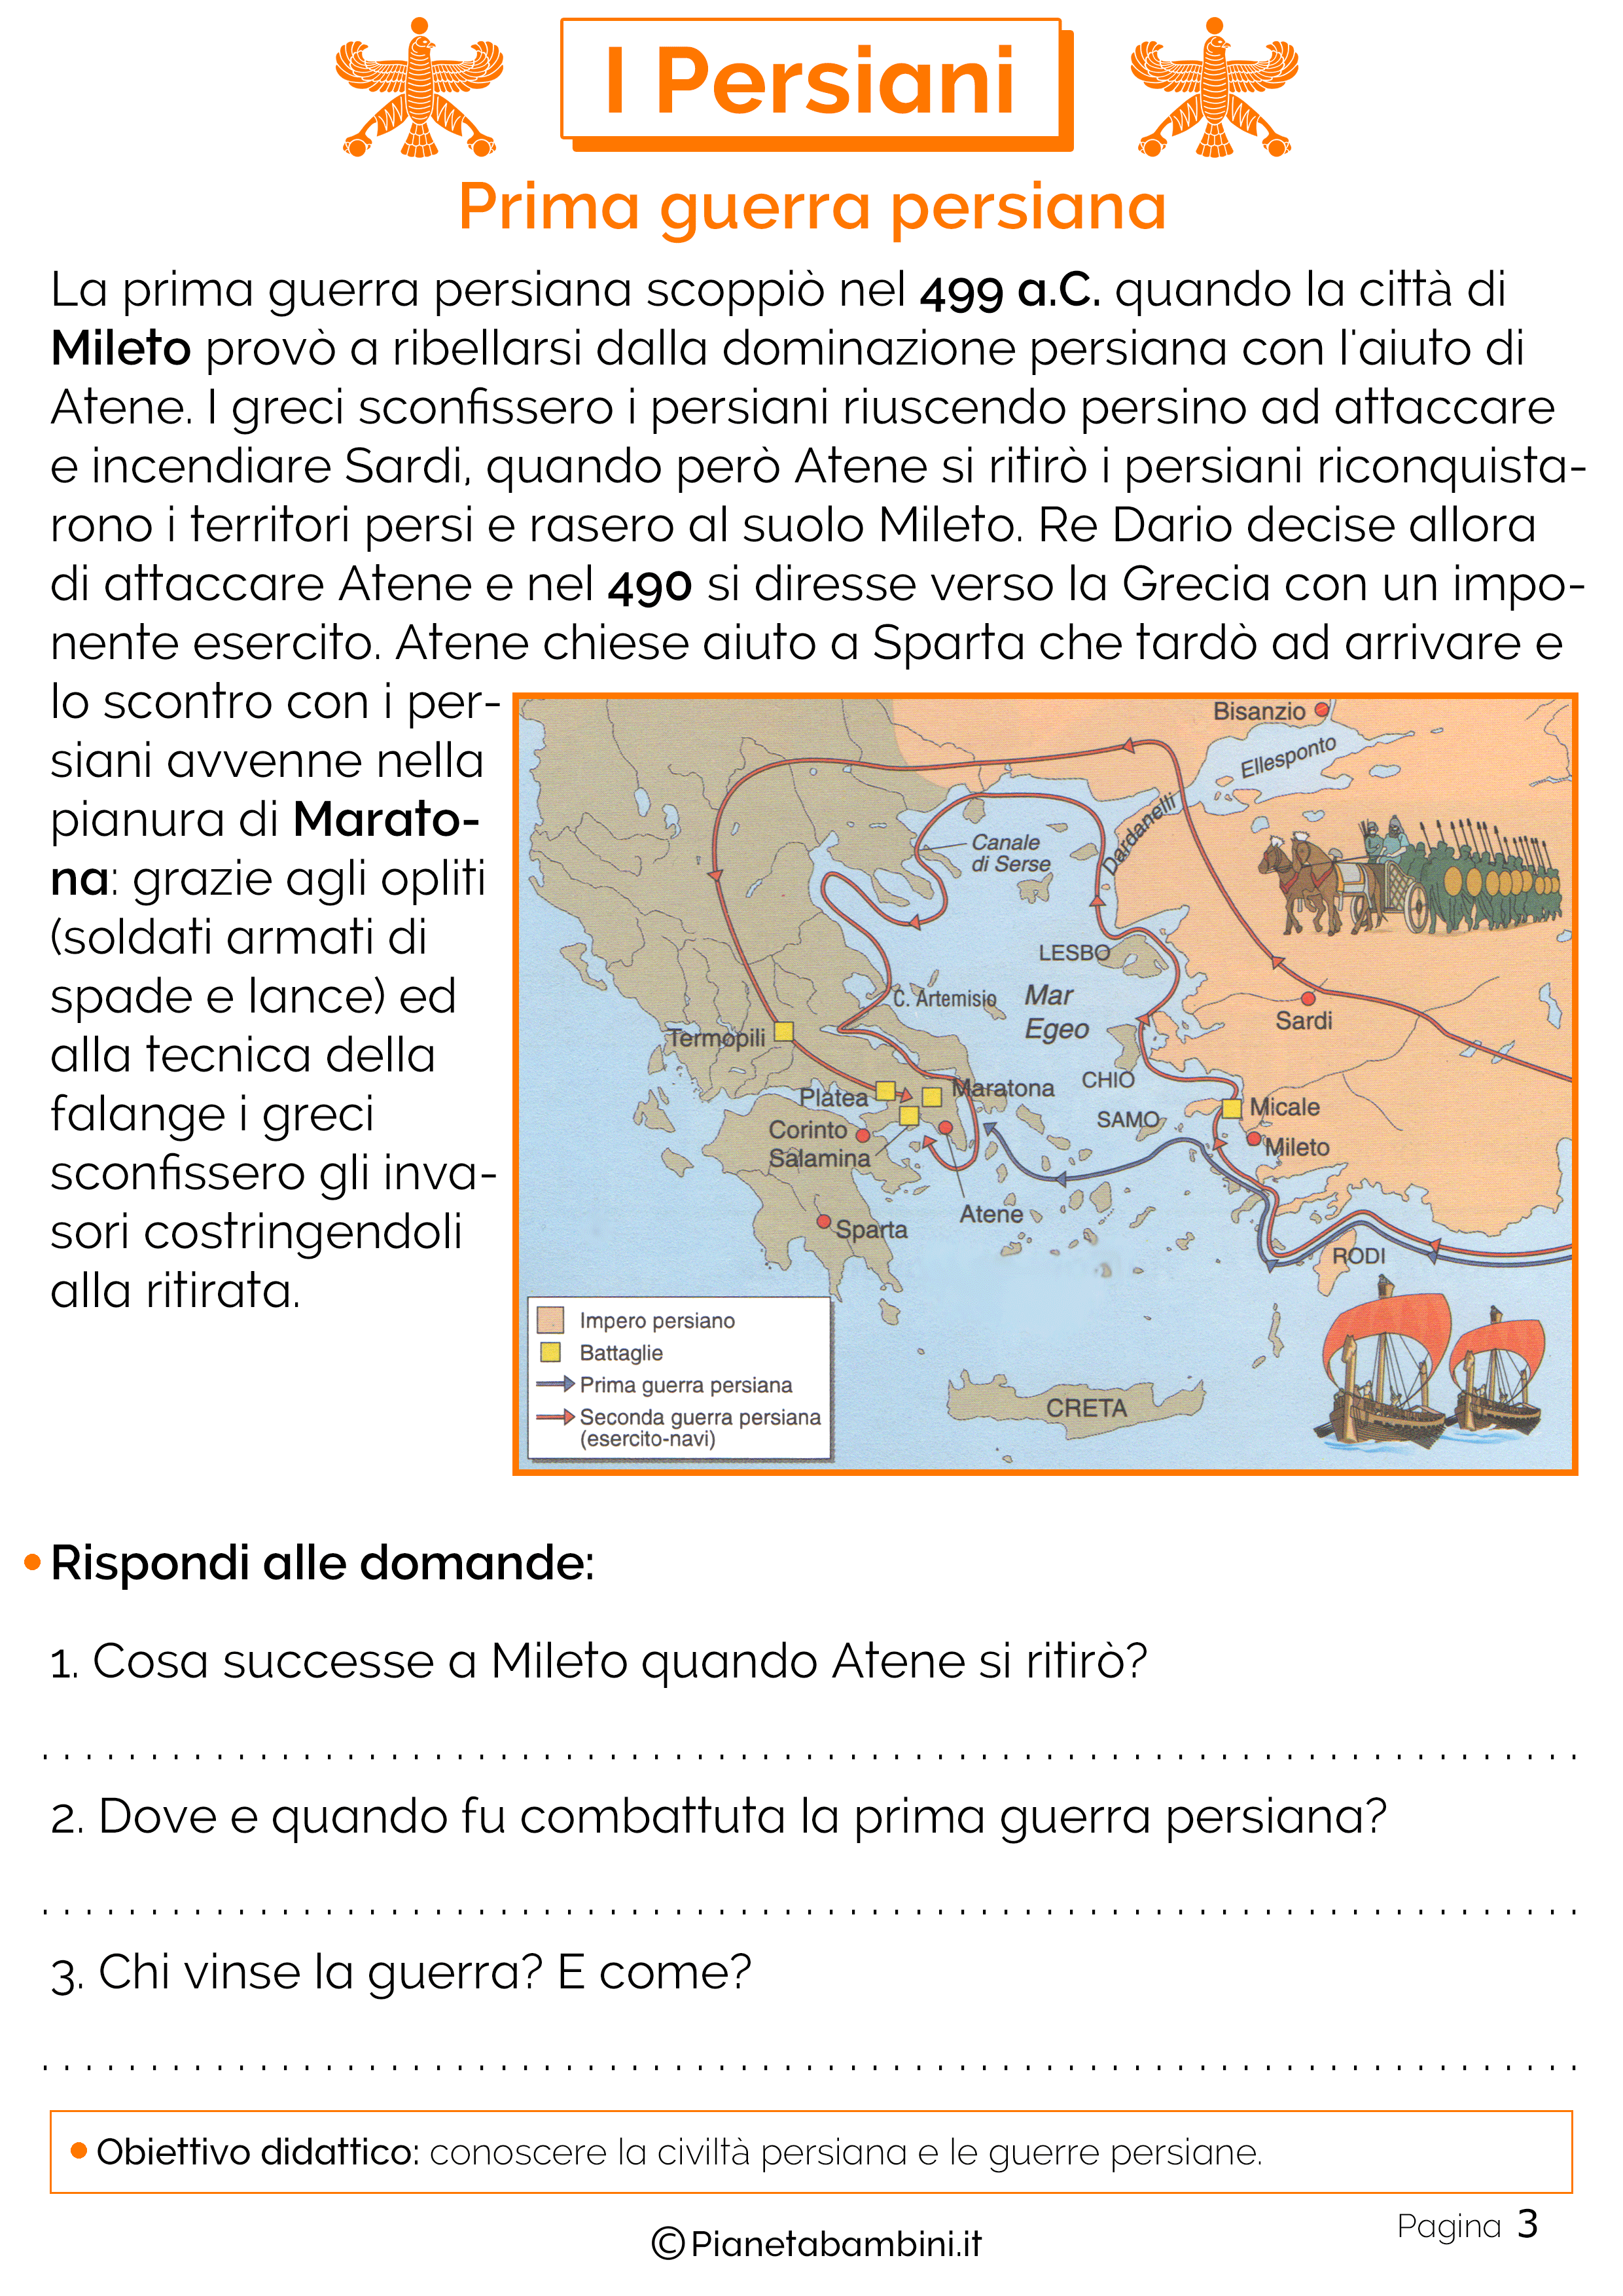 Eventi della prima guerra persiana